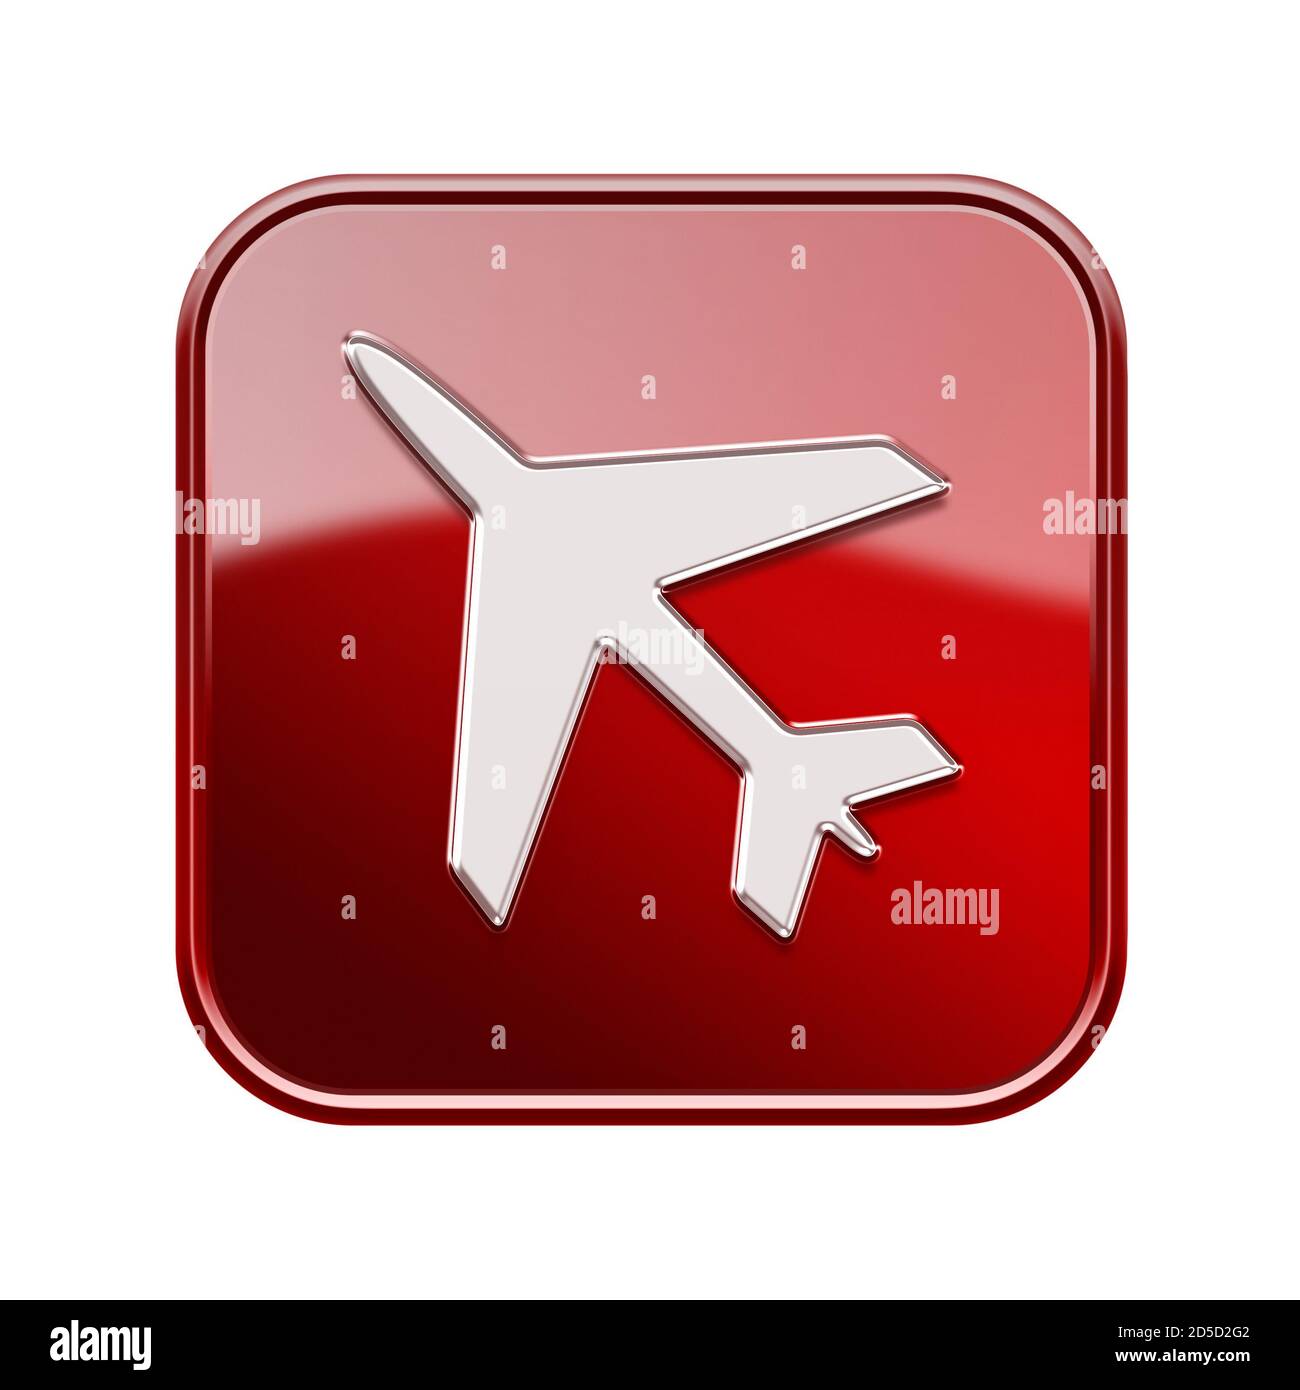 L'icône avion rouge brillant, isolé sur fond blanc Banque D'Images